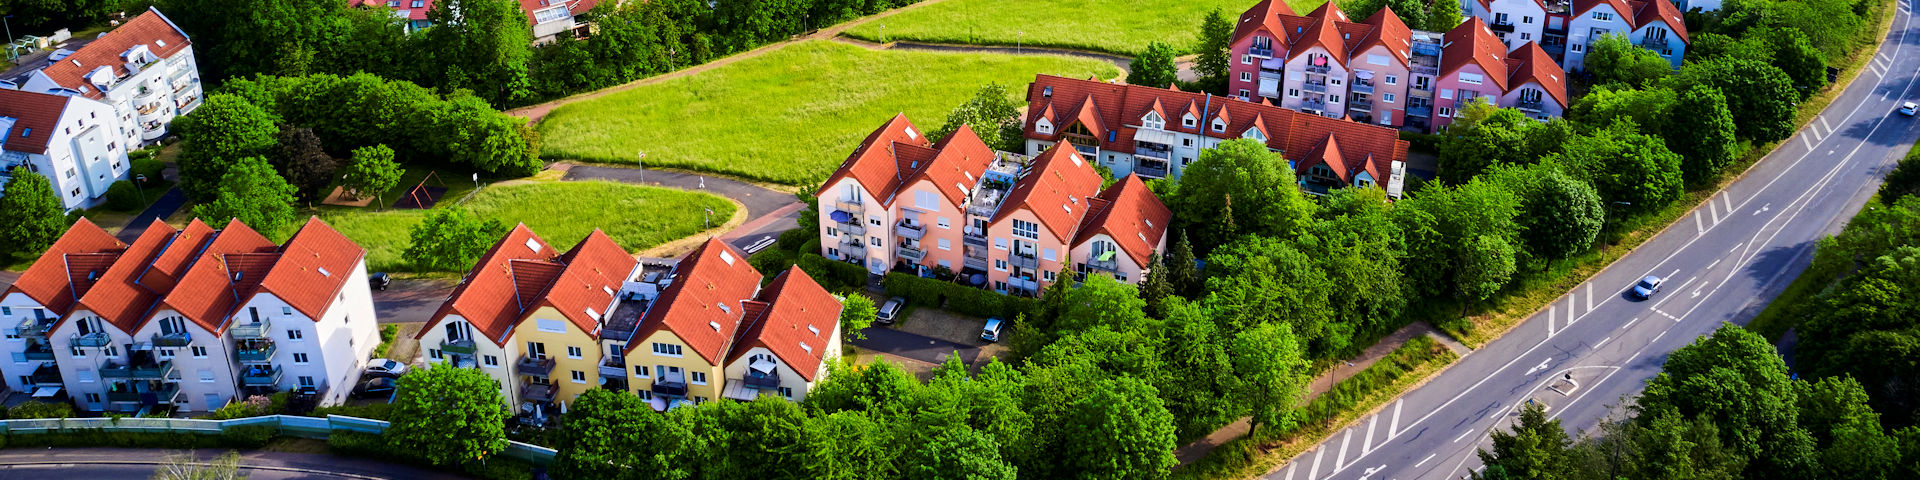 Luftaufnahme einer Wohnbausiedlung im Stadtteil Reinhardshof